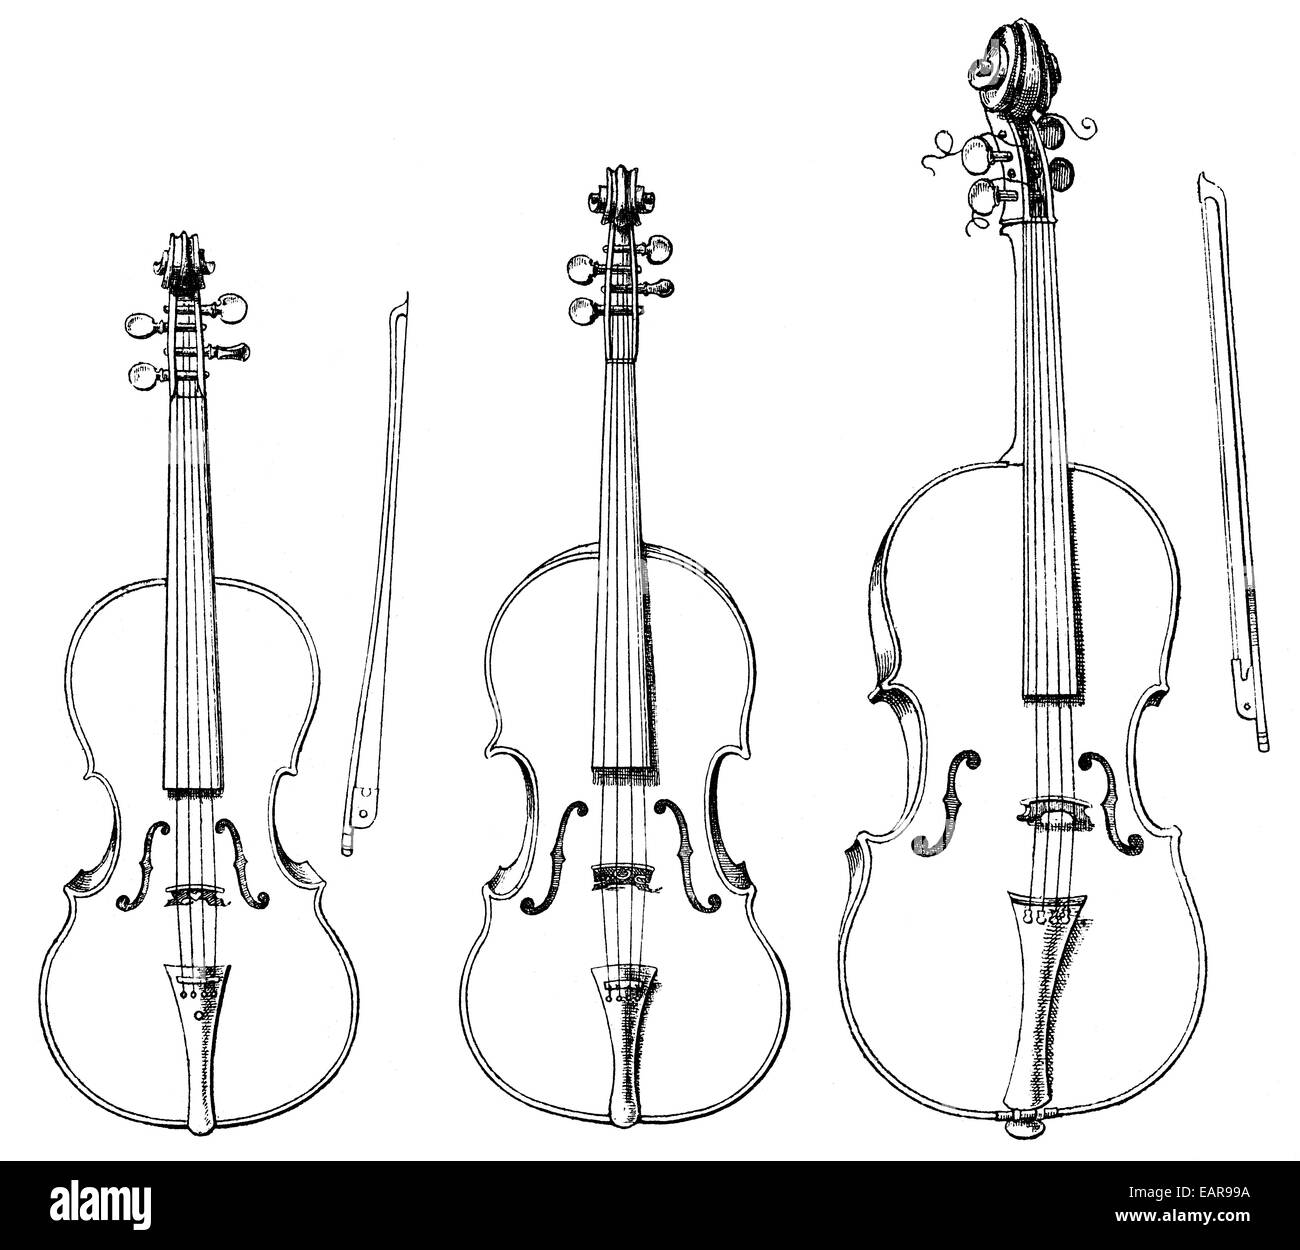 various forms of string instruments, violin, viola, cello, verschiedene  Formen vom Streichinstrumenten, Violine, Bratsche, Violo Stock Photo - Alamy